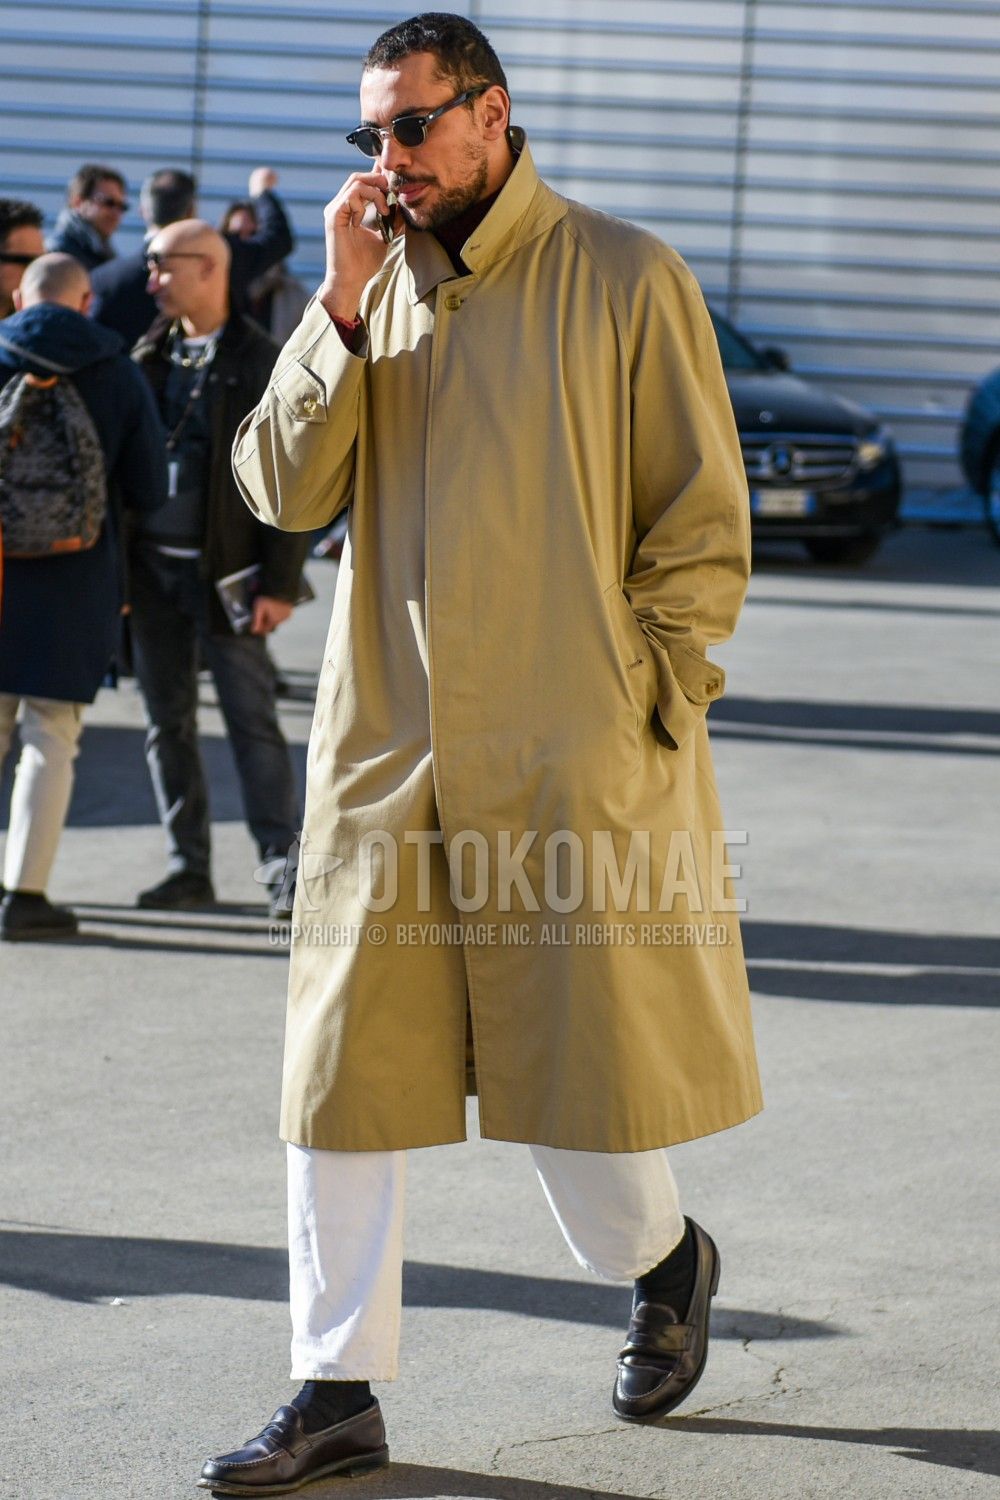 春コートと秋コートの違いは 兼用するならどんなコートを選ぶべき メンズファッションメディア Otokomae 男前研究所